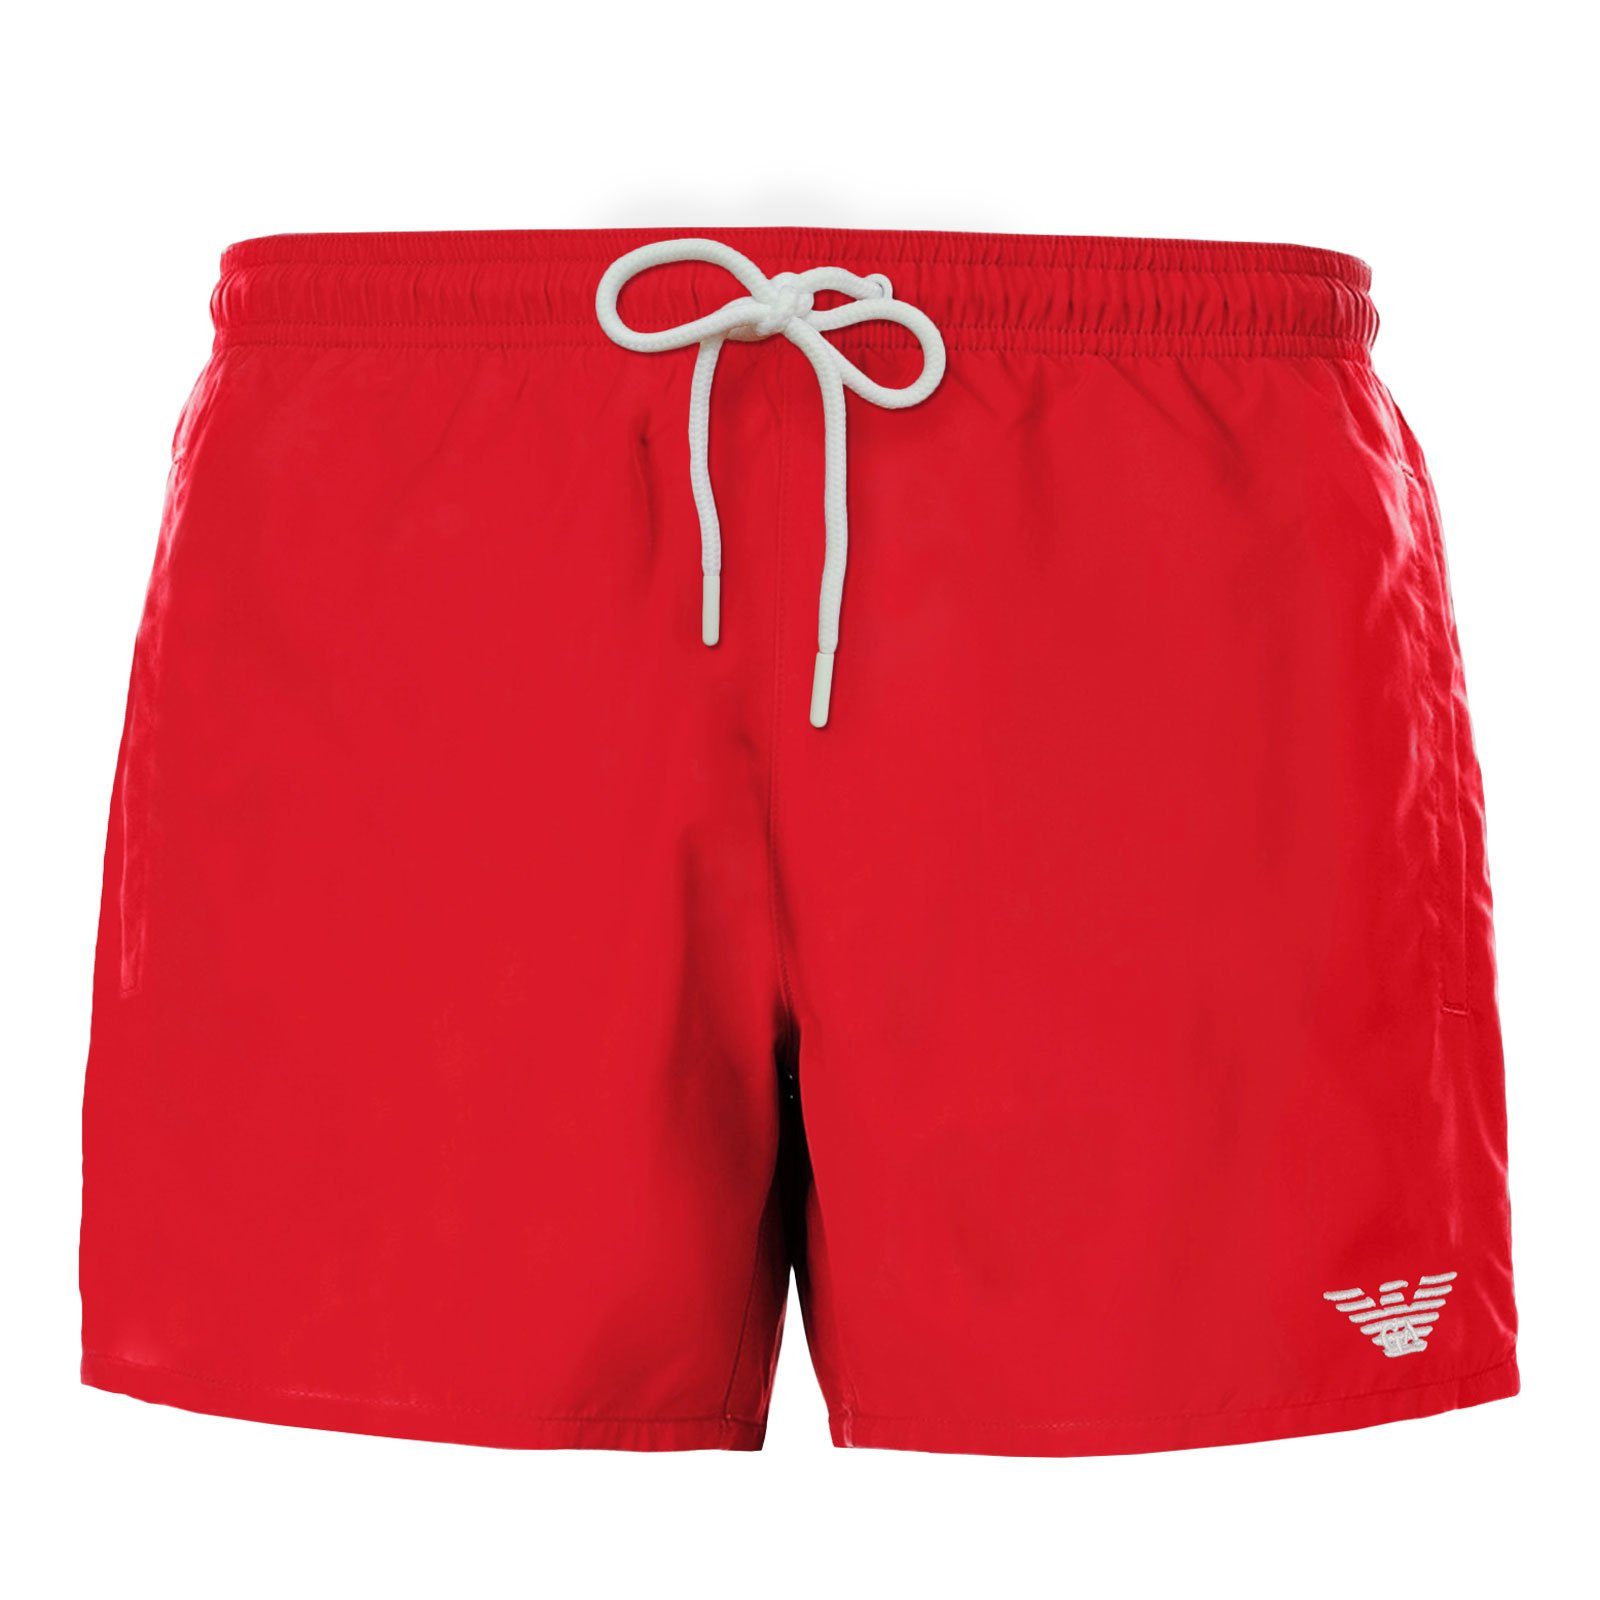 Emporio Armani Boxer-Badehose Mid Boxer Beachwear mit kleinen Markenlogo am linken Bein 00173 ruby red